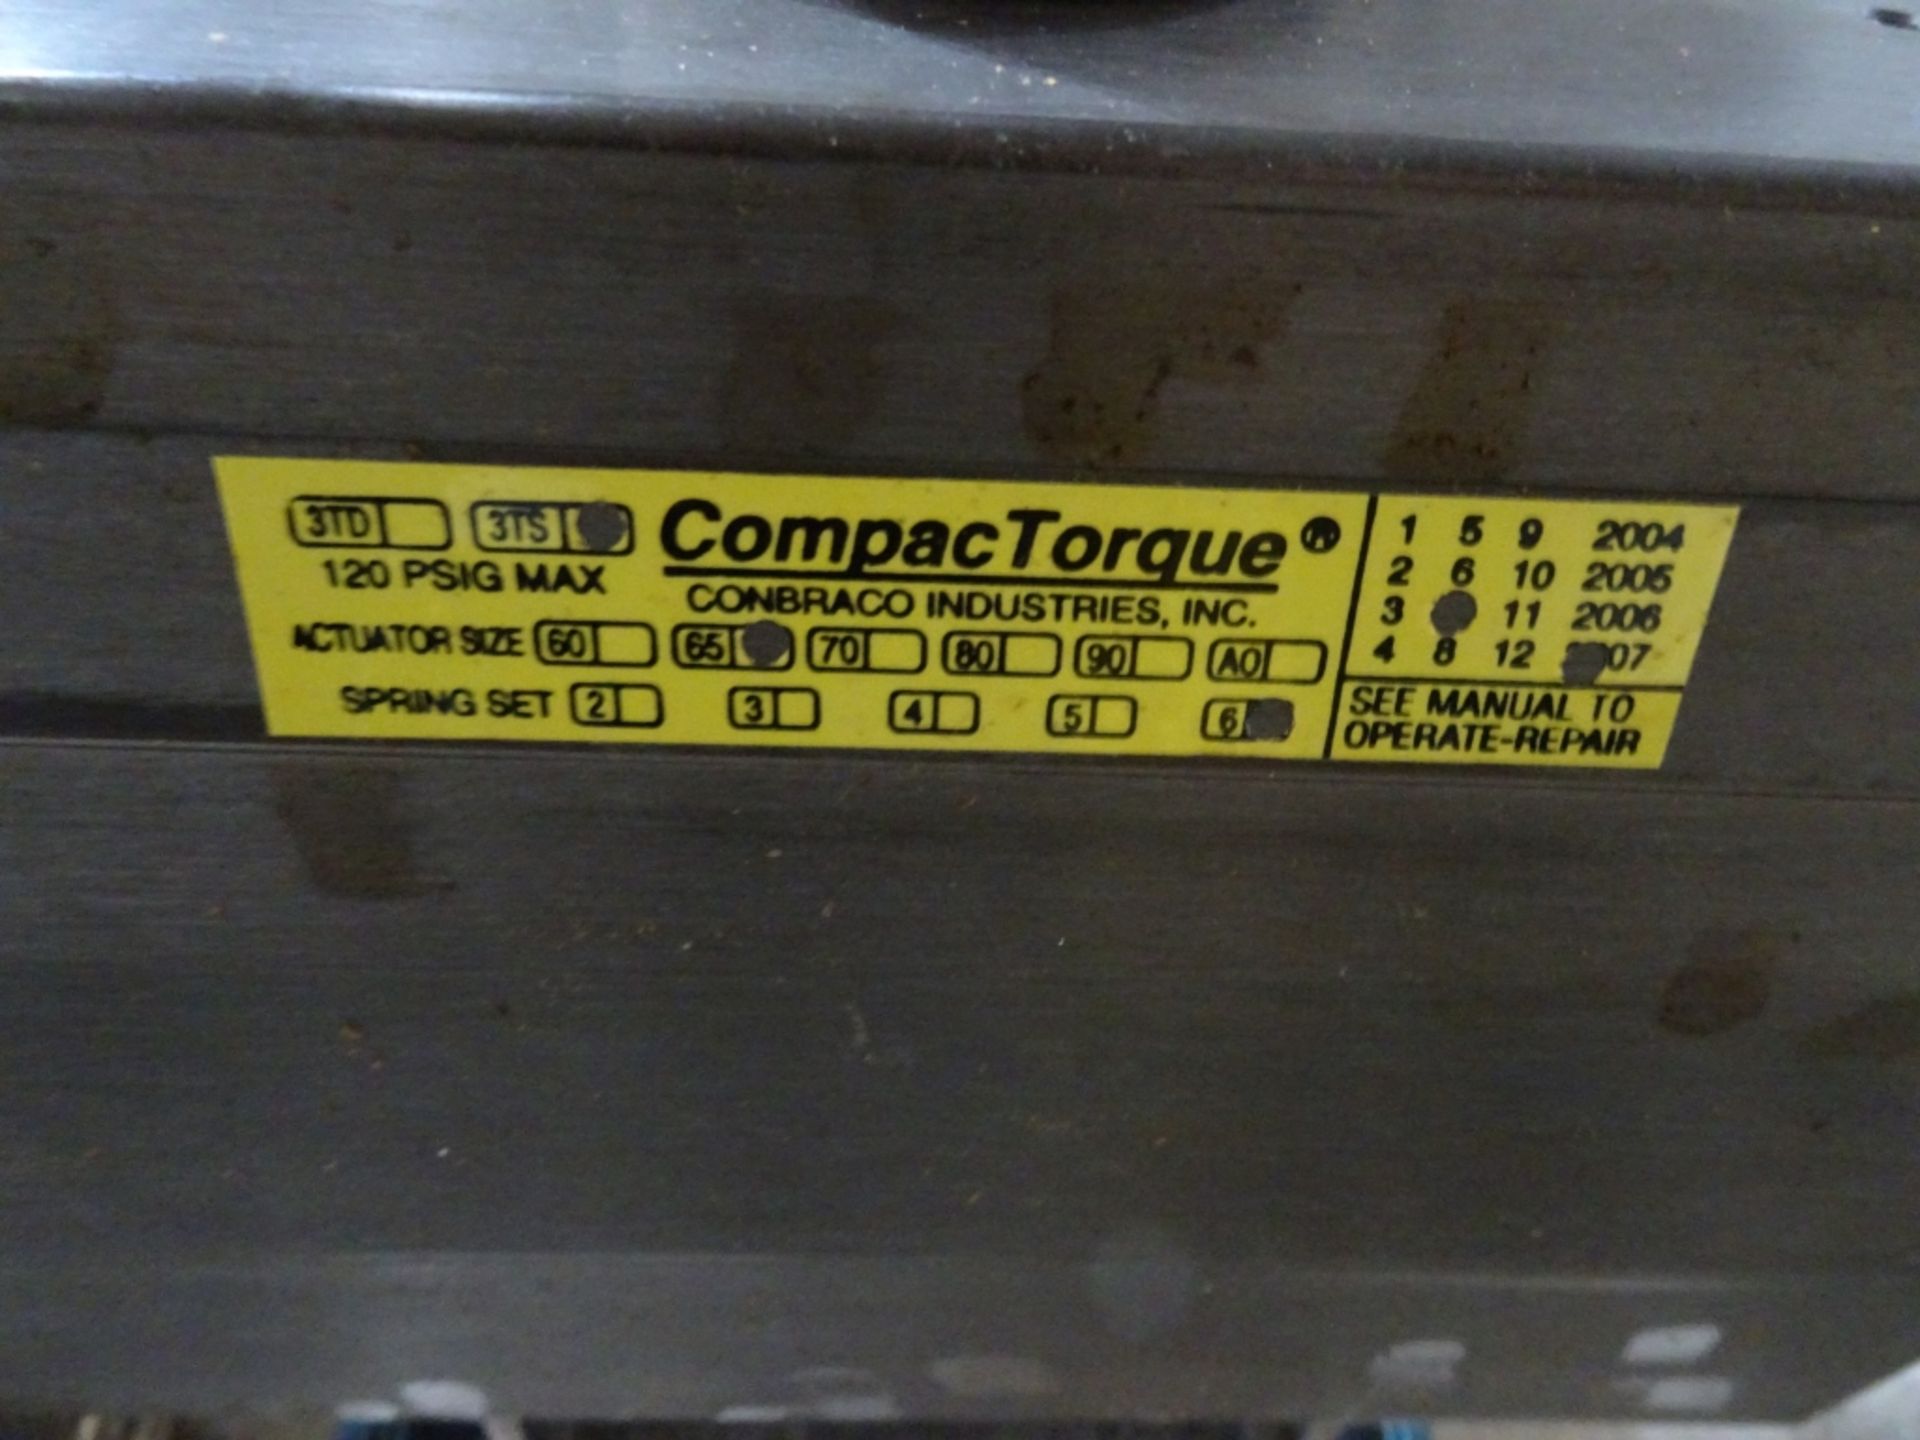 (2) Compac Torque Valve Actuator 120 PSIG Max - Image 3 of 3